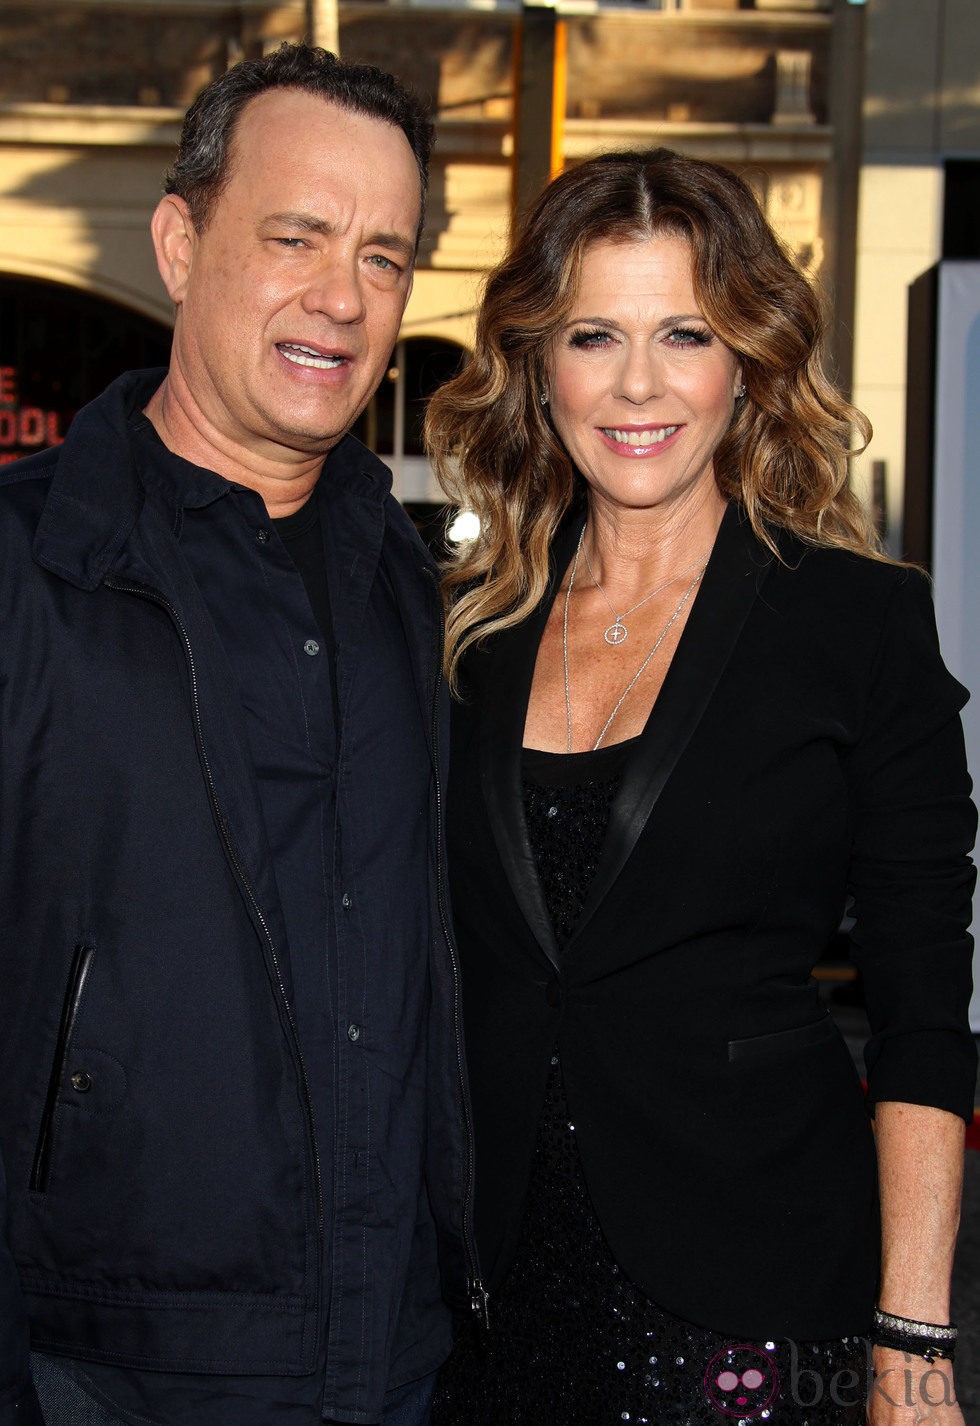 Tom Hanks y Rita Wilson en el estreno de 'Larry Crowne'